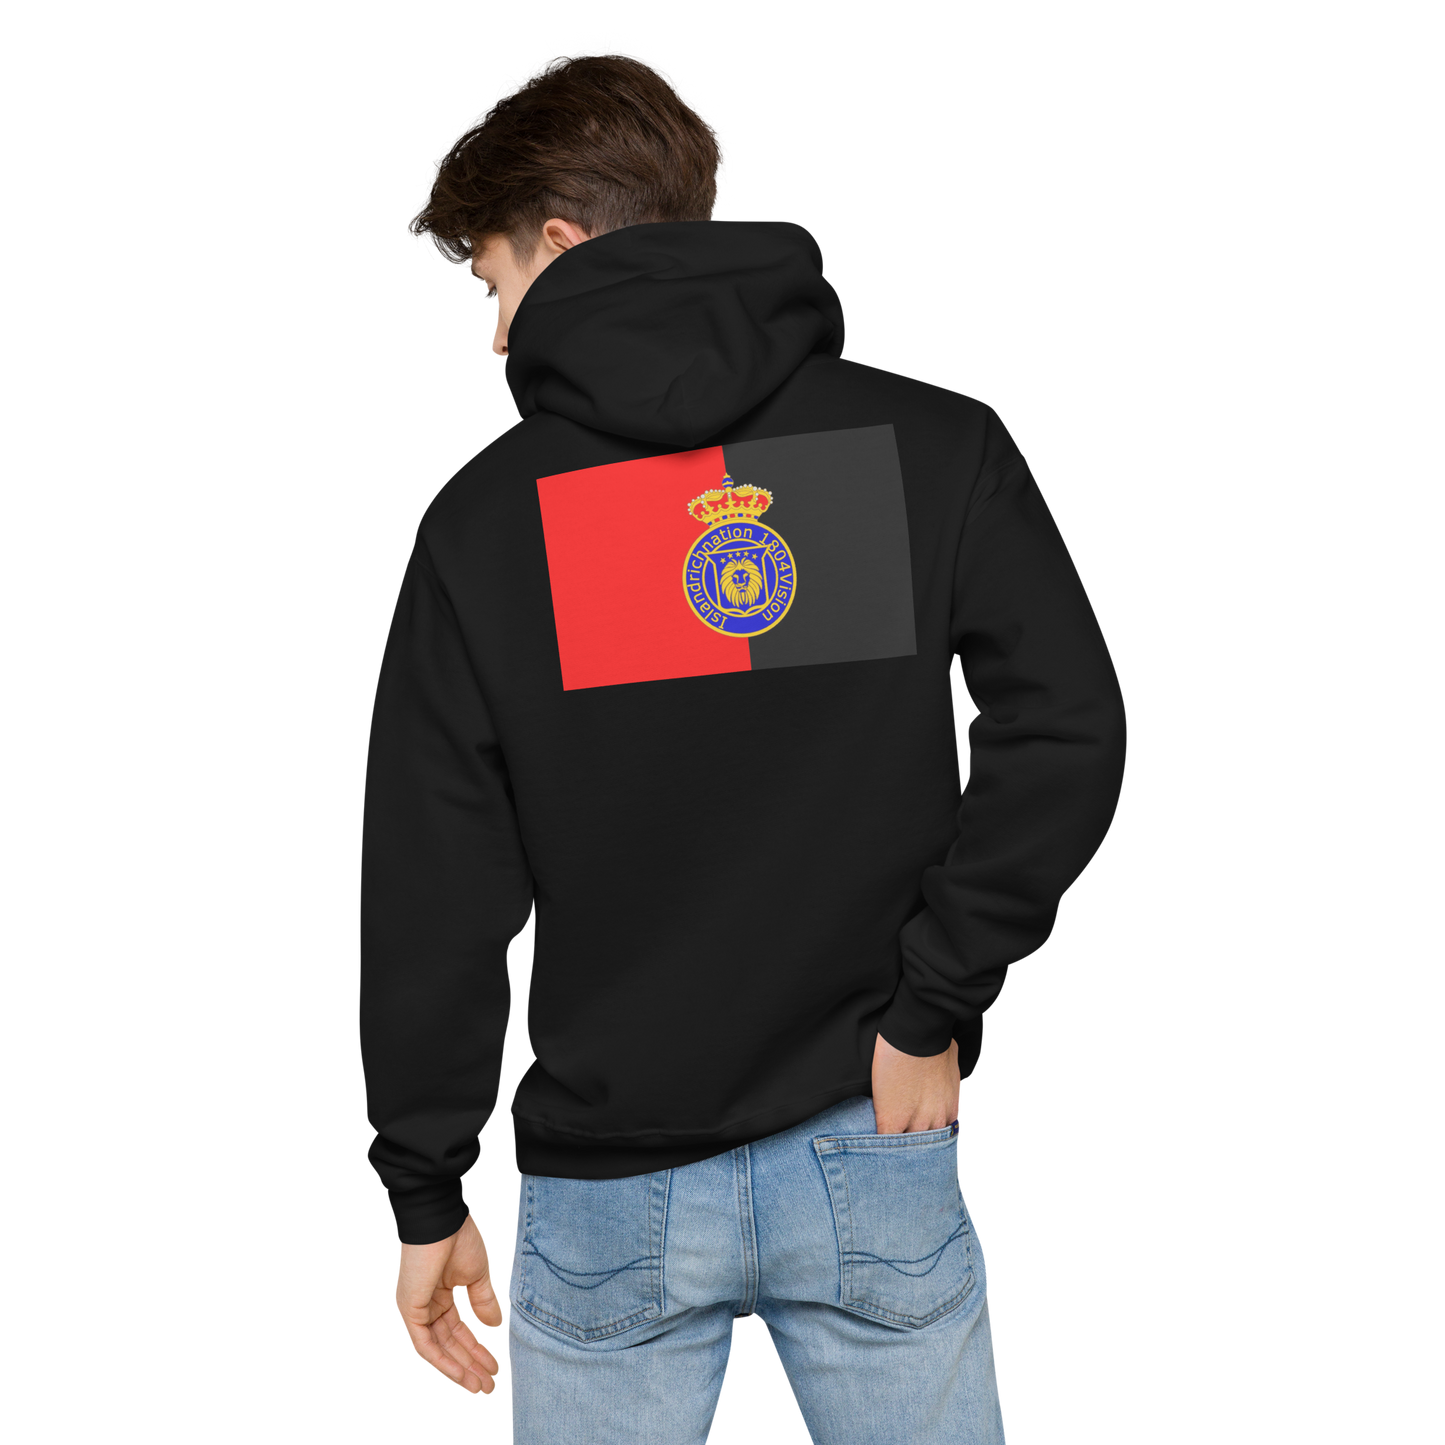 Dessaline Unisex fleece hoodie